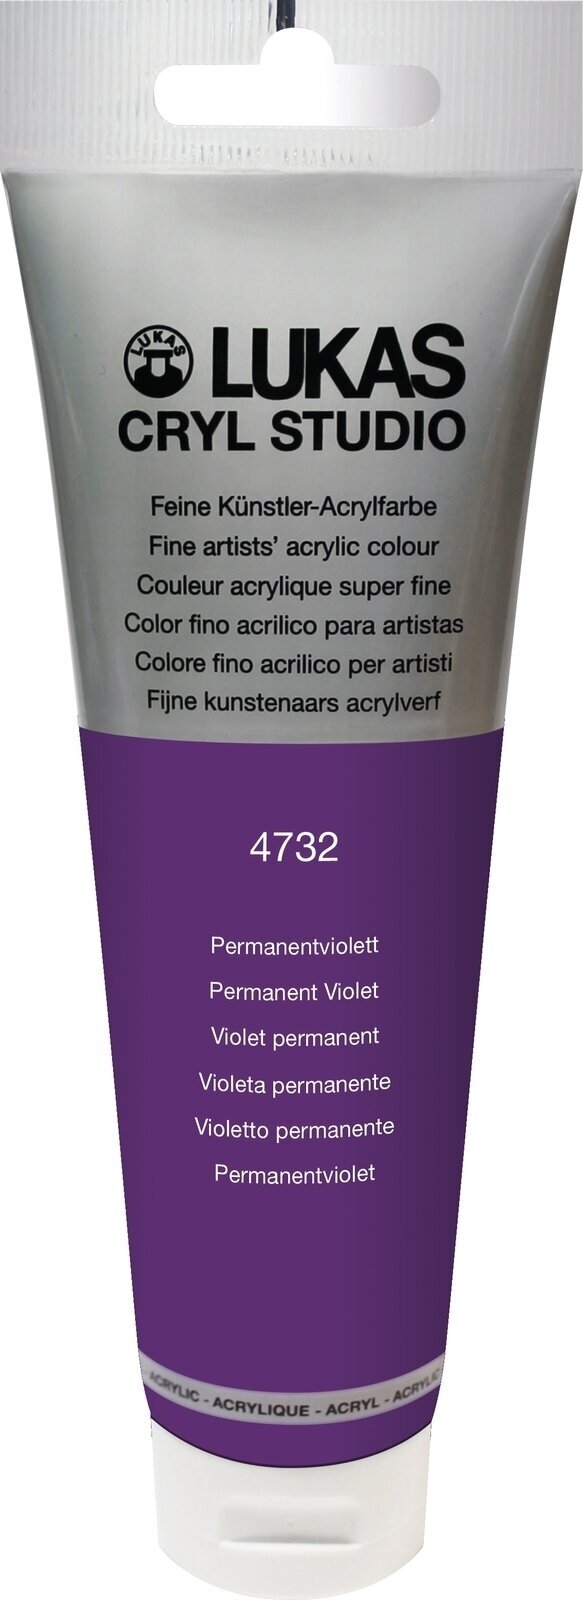 Peinture acrylique Lukas Cryl Studio Peinture acrylique 125 ml Permanent Violet